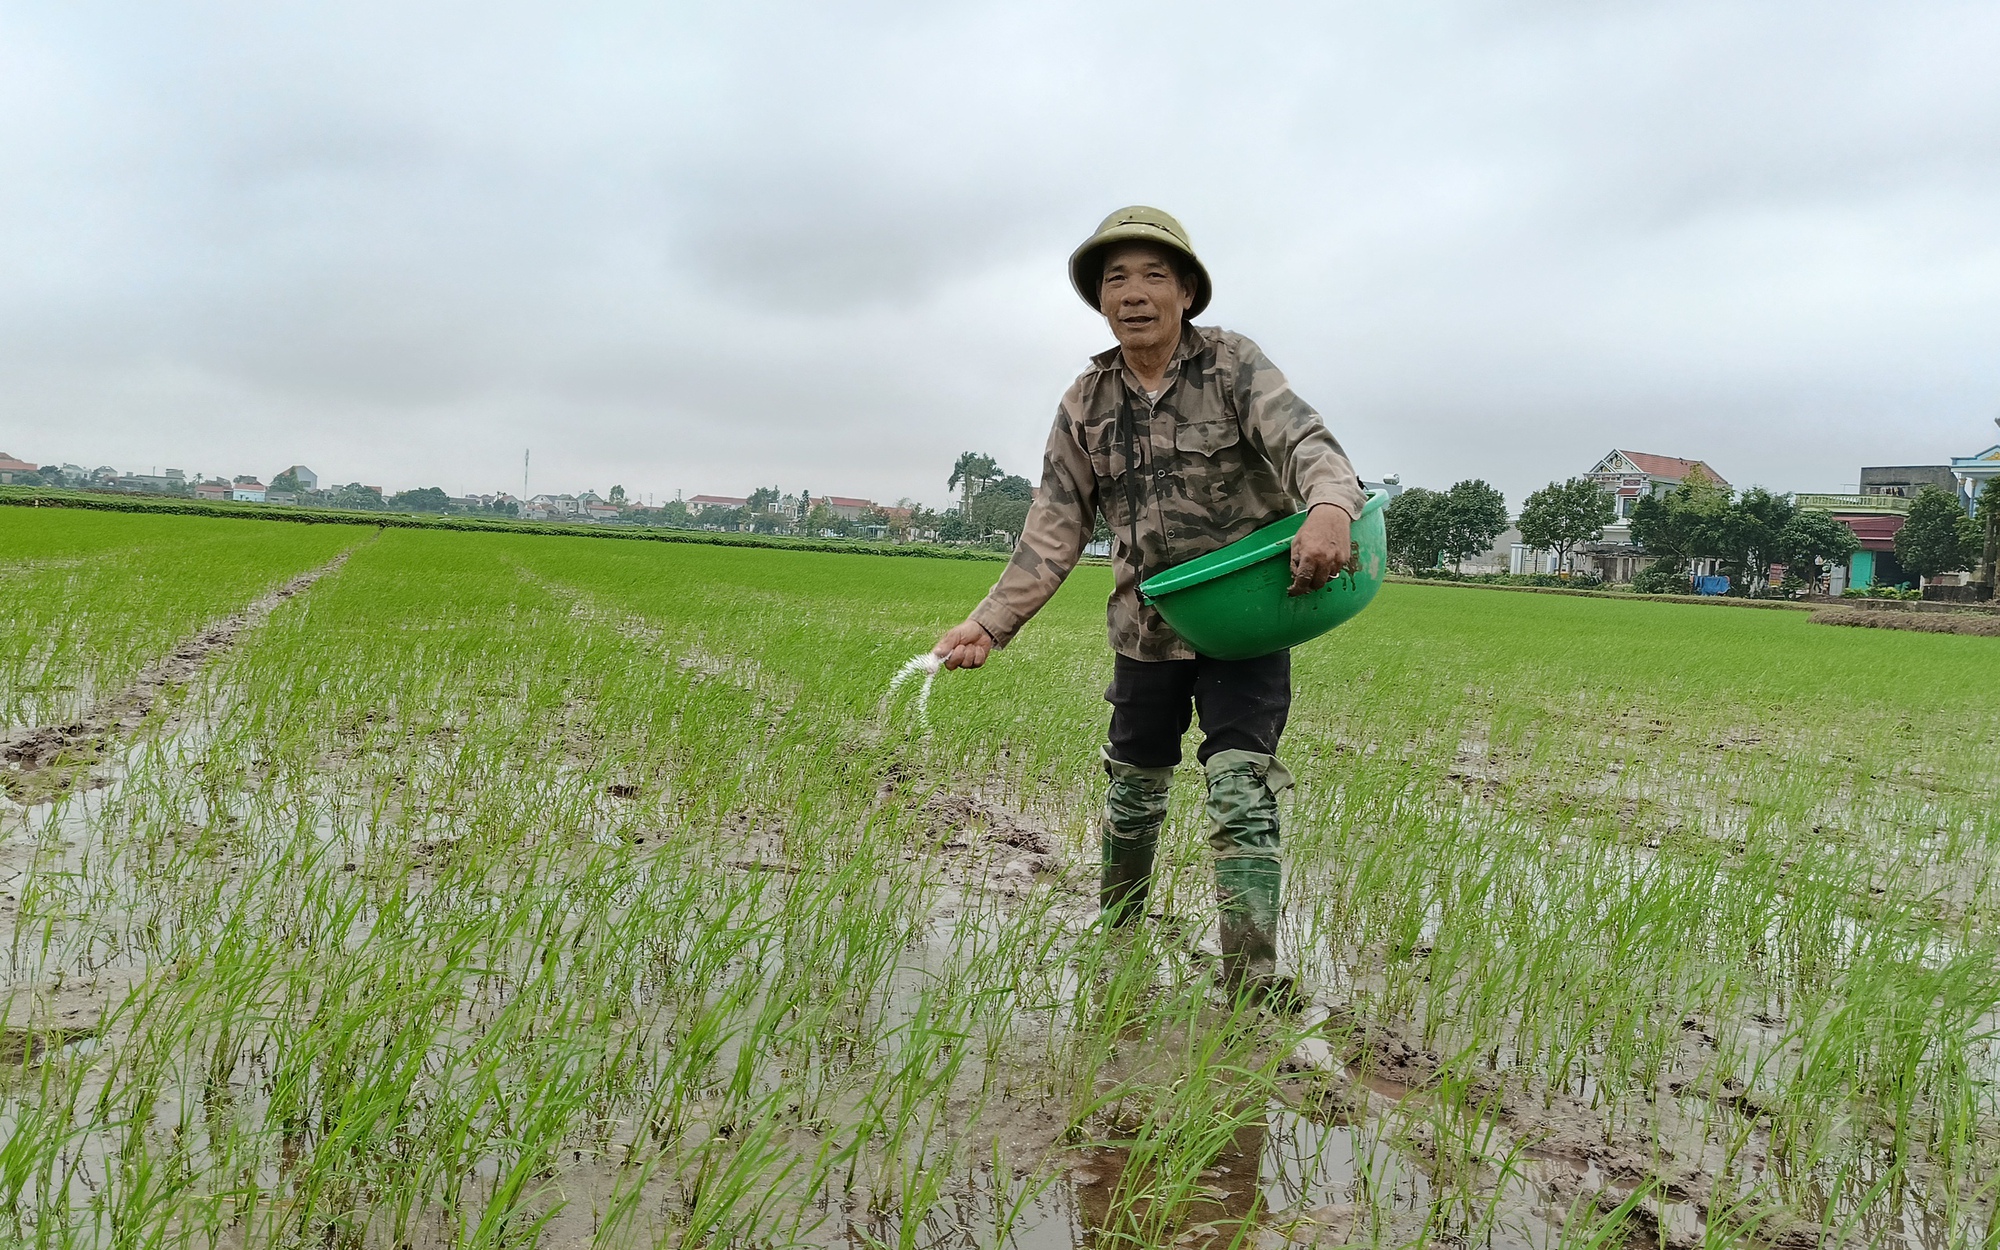 Sự thật việc canh tác lúa bằng phương pháp mới: Năng suất lúa thấp, không như những lời giới thiệu (Bài 2)